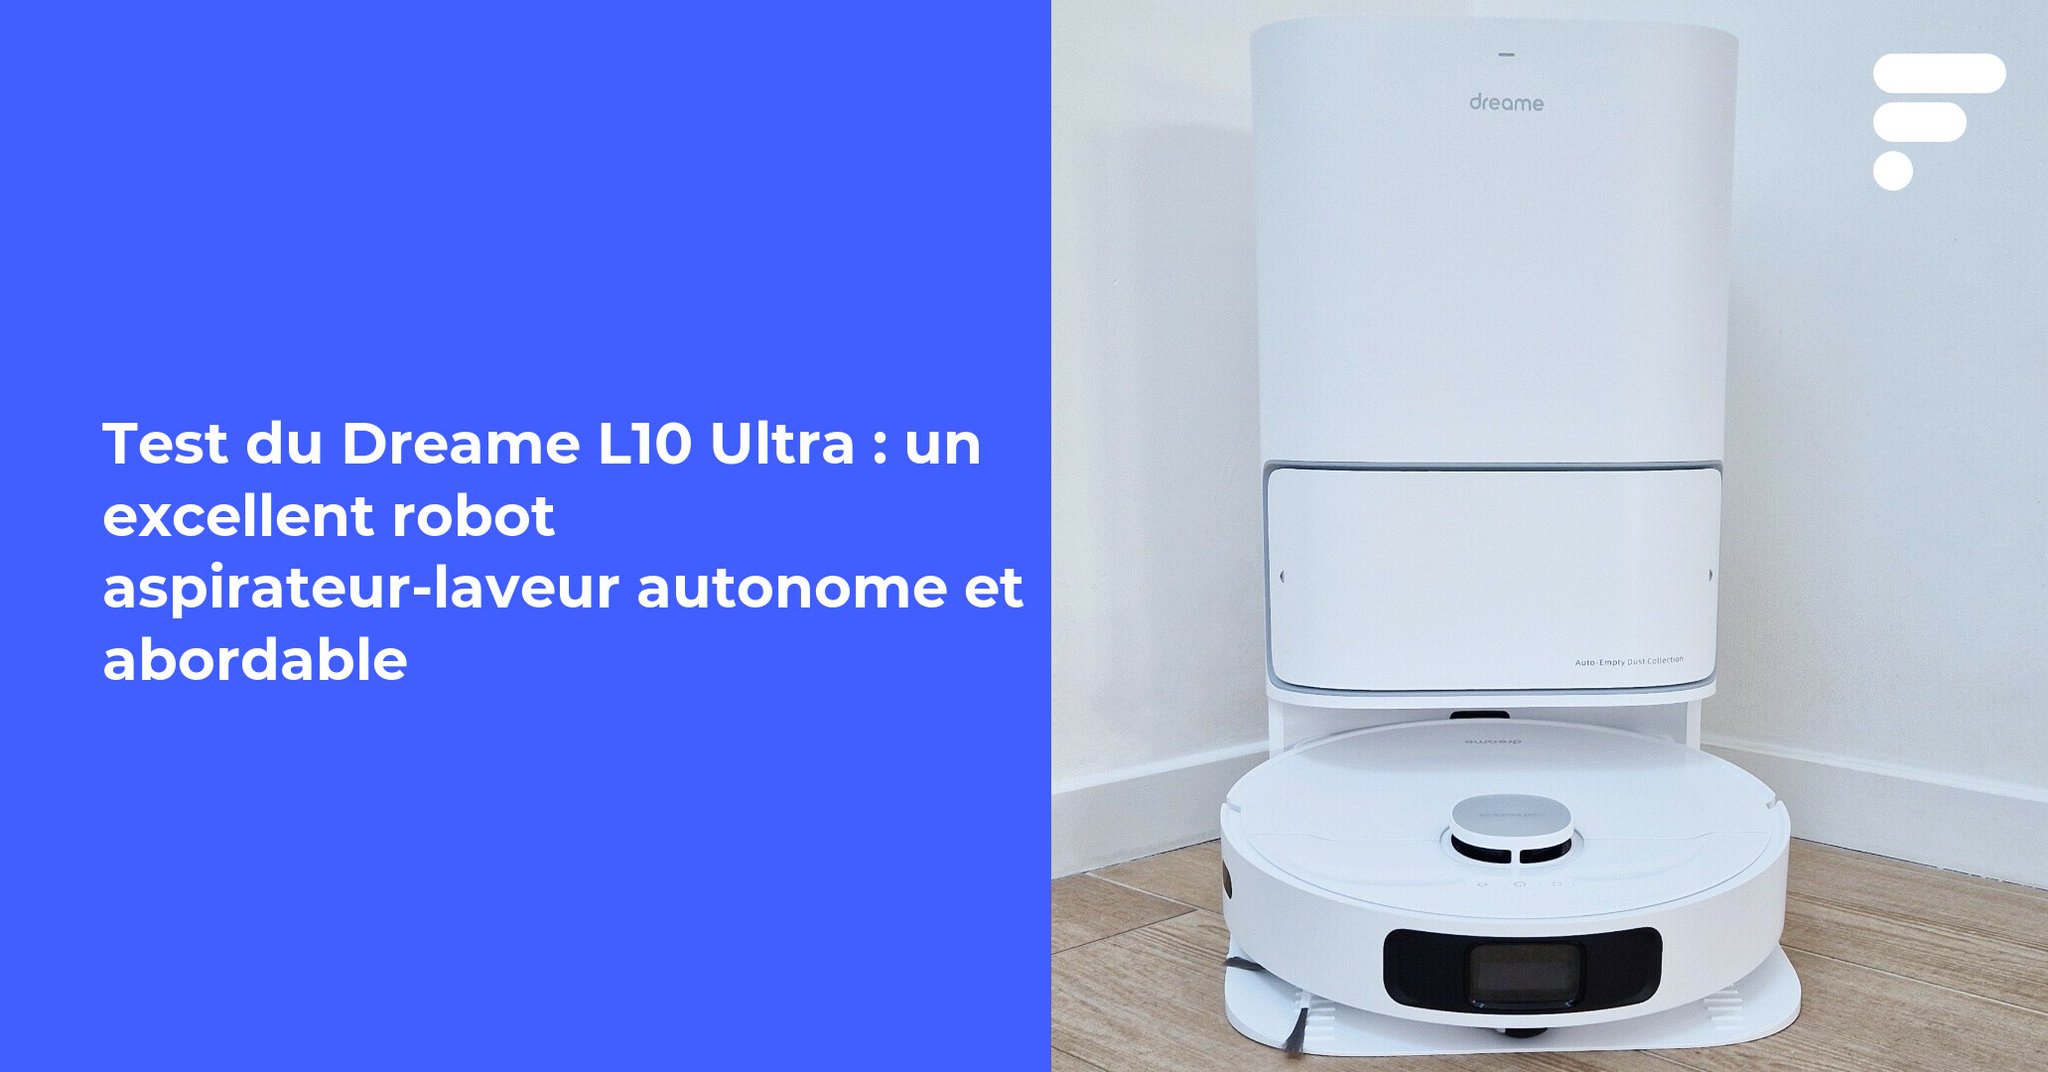 Frandroid on X: Test du Dreame L10 Ultra : un excellent robot aspirateur- laveur autonome et abordable 👉    / X